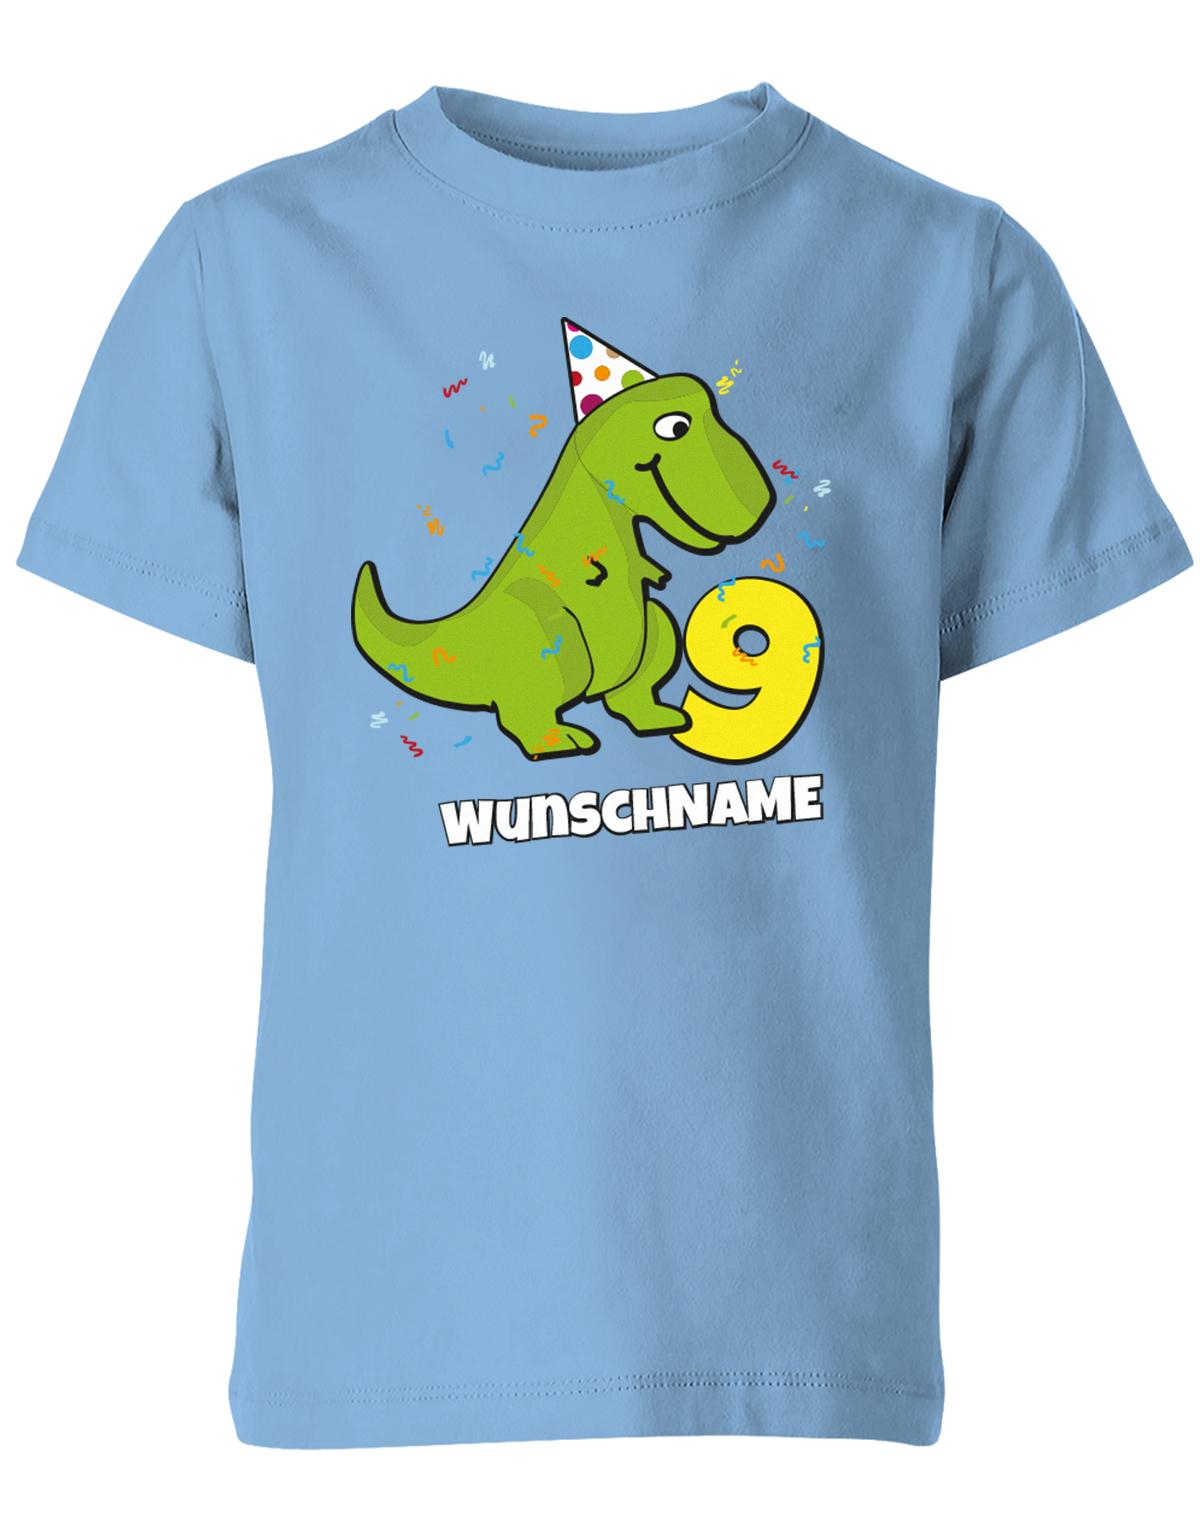 ich-bin-9-Dinosaurier-t-rex-wunschname-geburtstag-kinder-shirt-hellblau